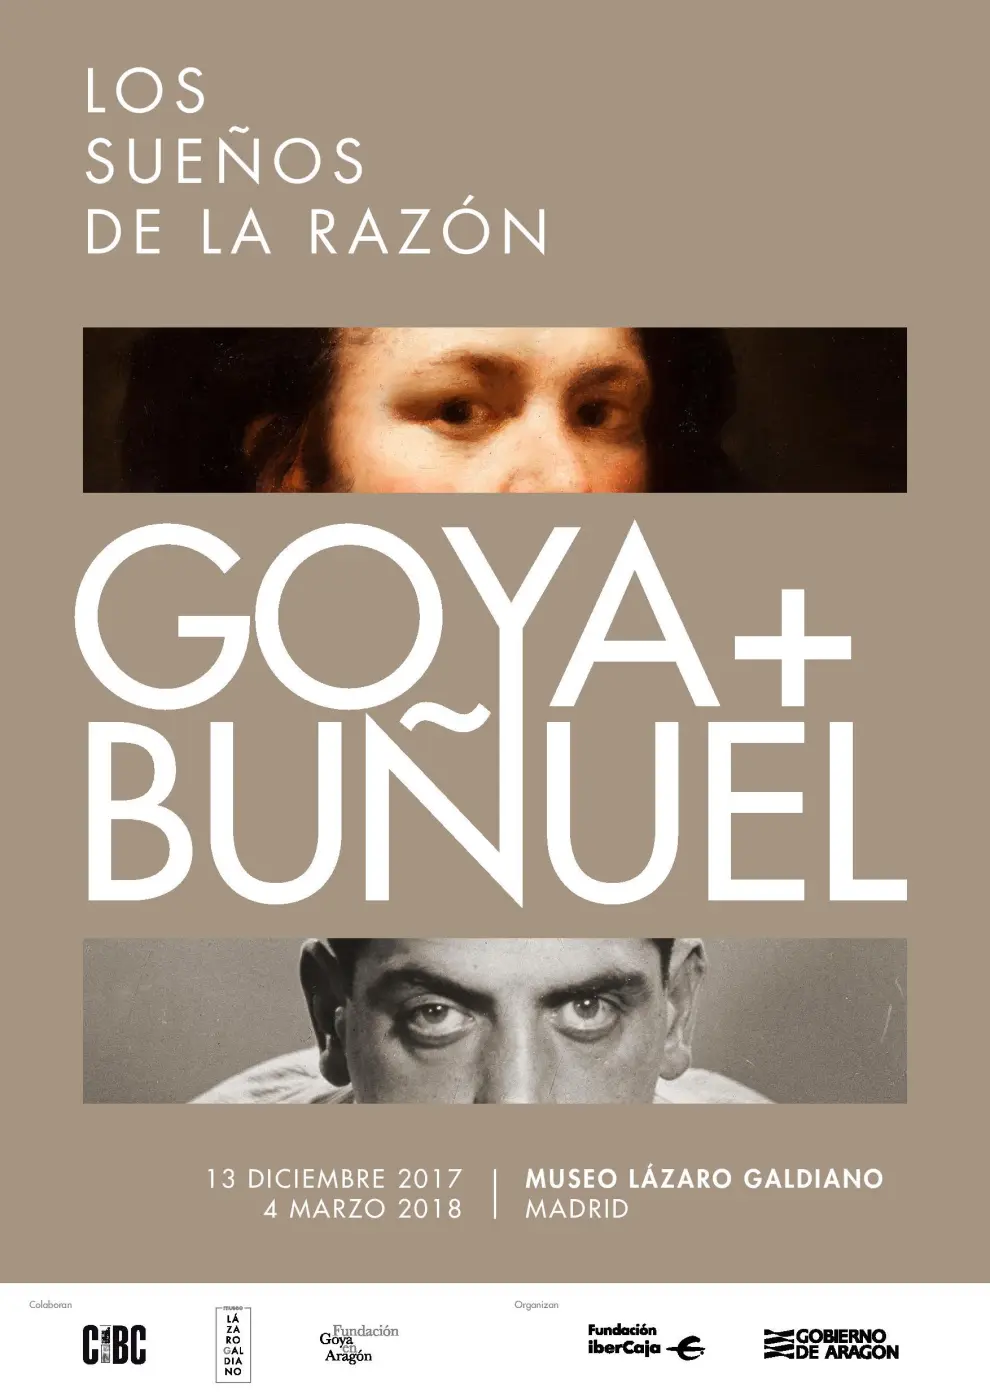 Francisco de Goya y Lucientes, El sueño de la razón produce monstruos (Caprichos, 43). Museo Lázaro Galdiano.